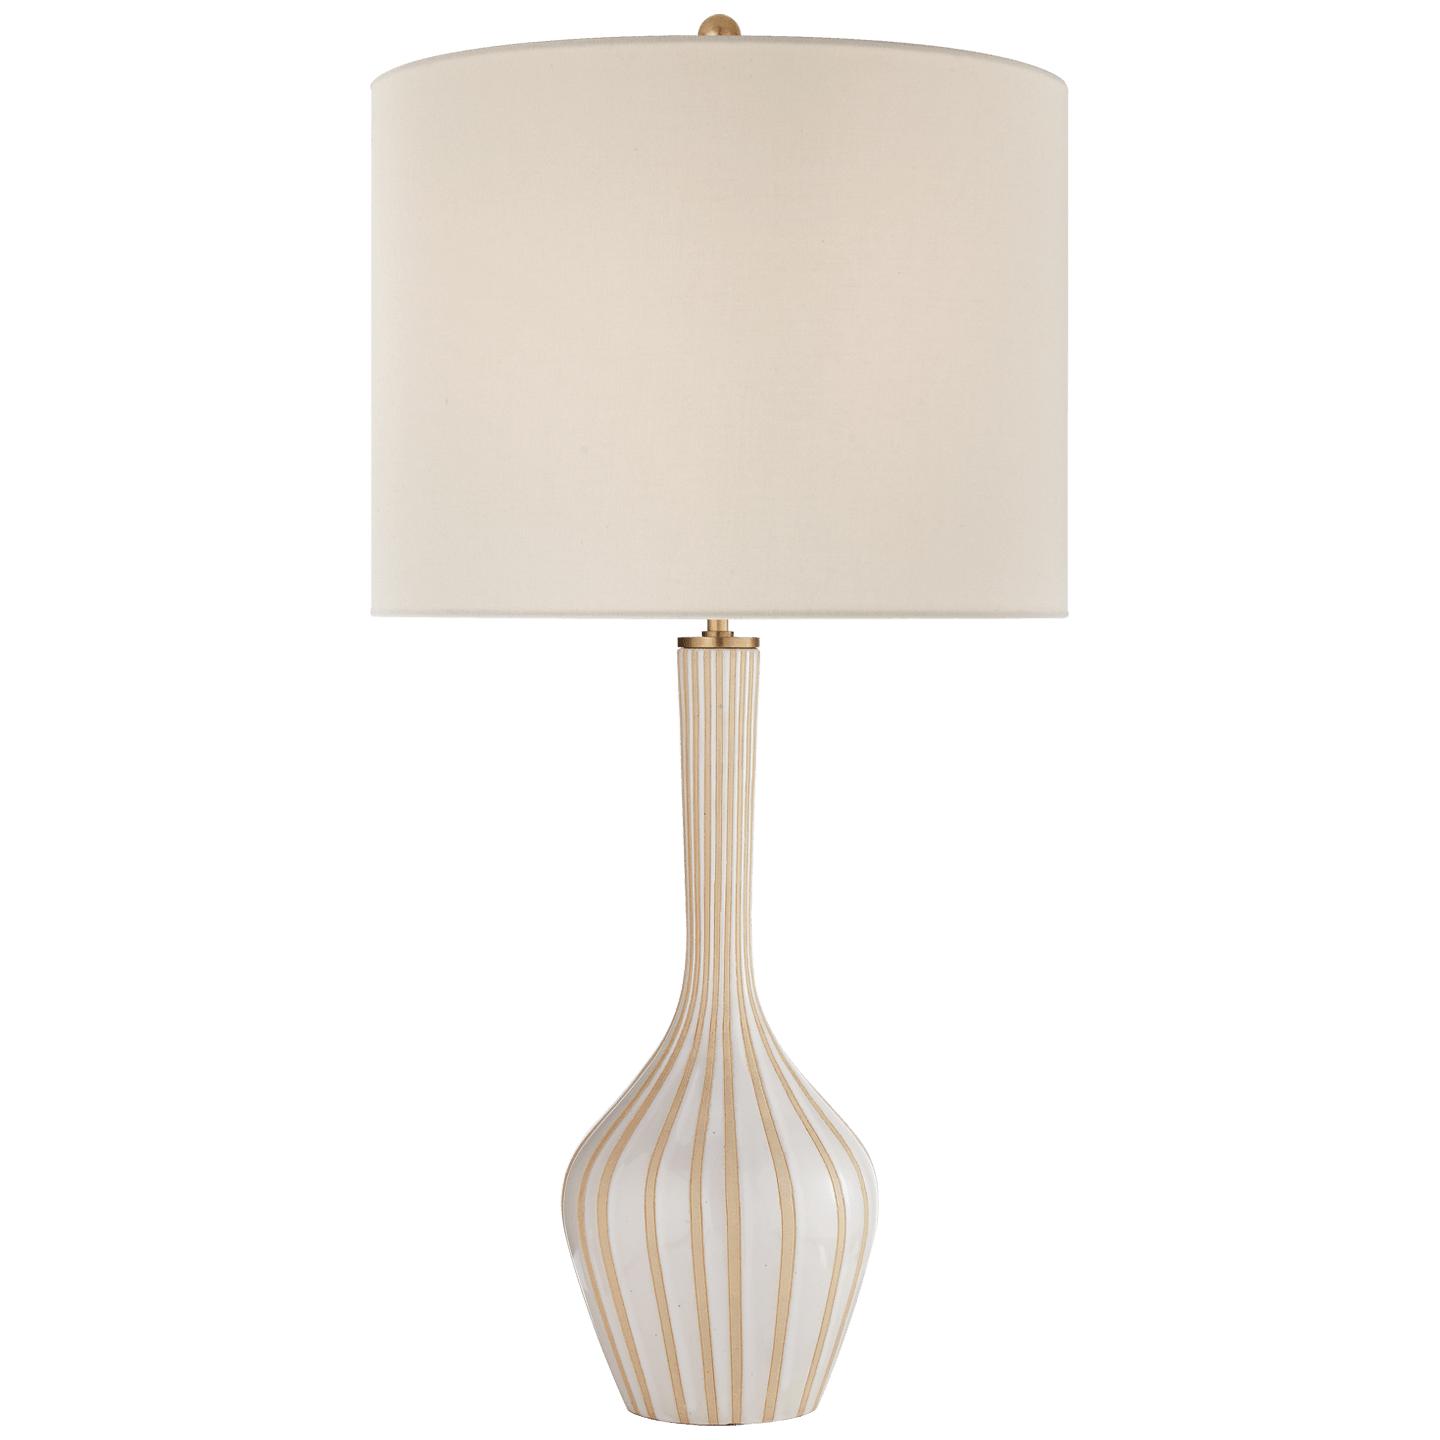 Купить Настольная лампа Parkwood Large Table Lamp в интернет-магазине roooms.ru